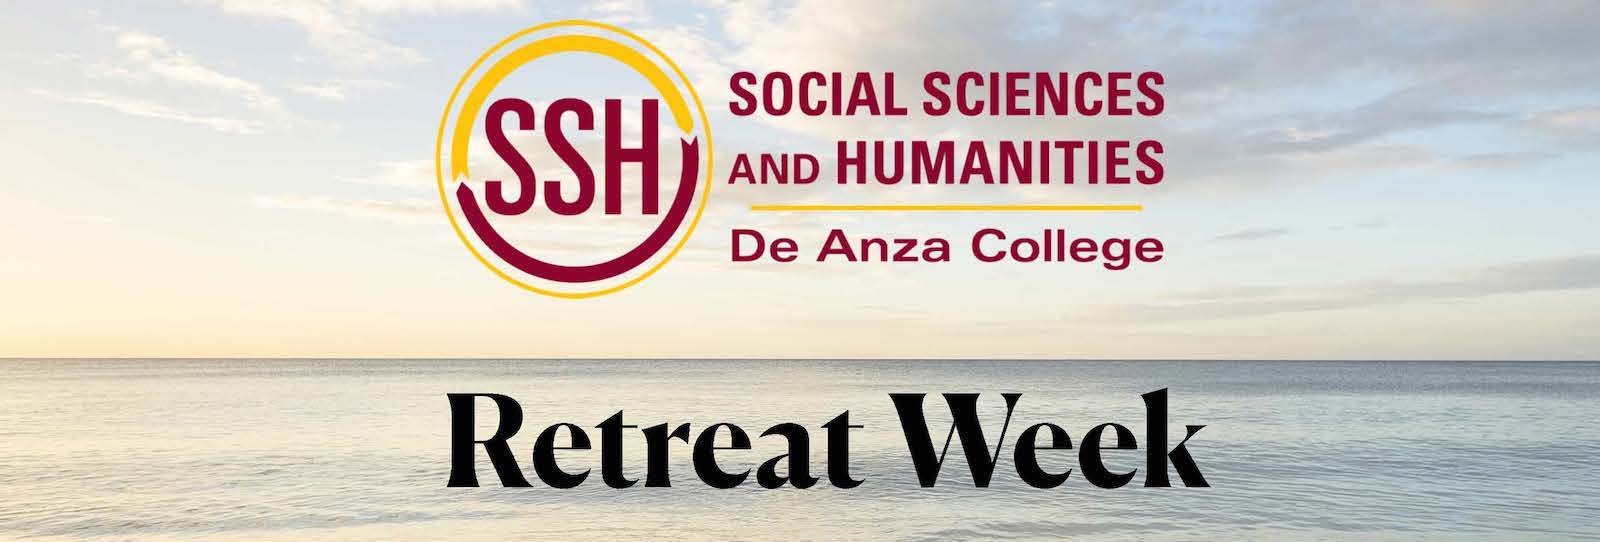 Social Sciences and Humanities Retreat Week